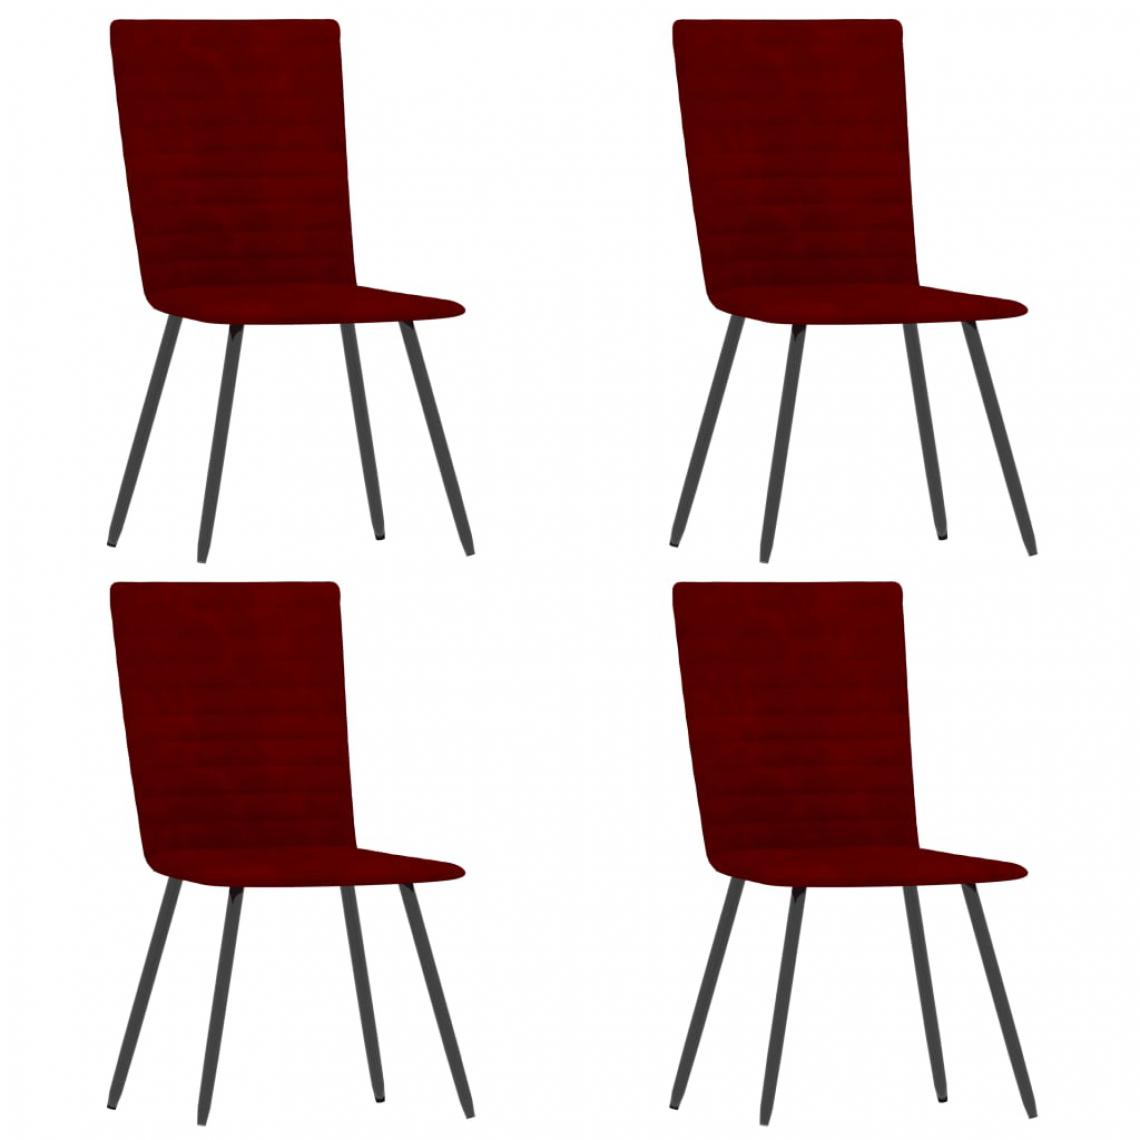 Icaverne - Admirable Fauteuils et chaises Dakar Chaises de salle à manger 4 pcs Rouge bordeaux Velours - Chaises